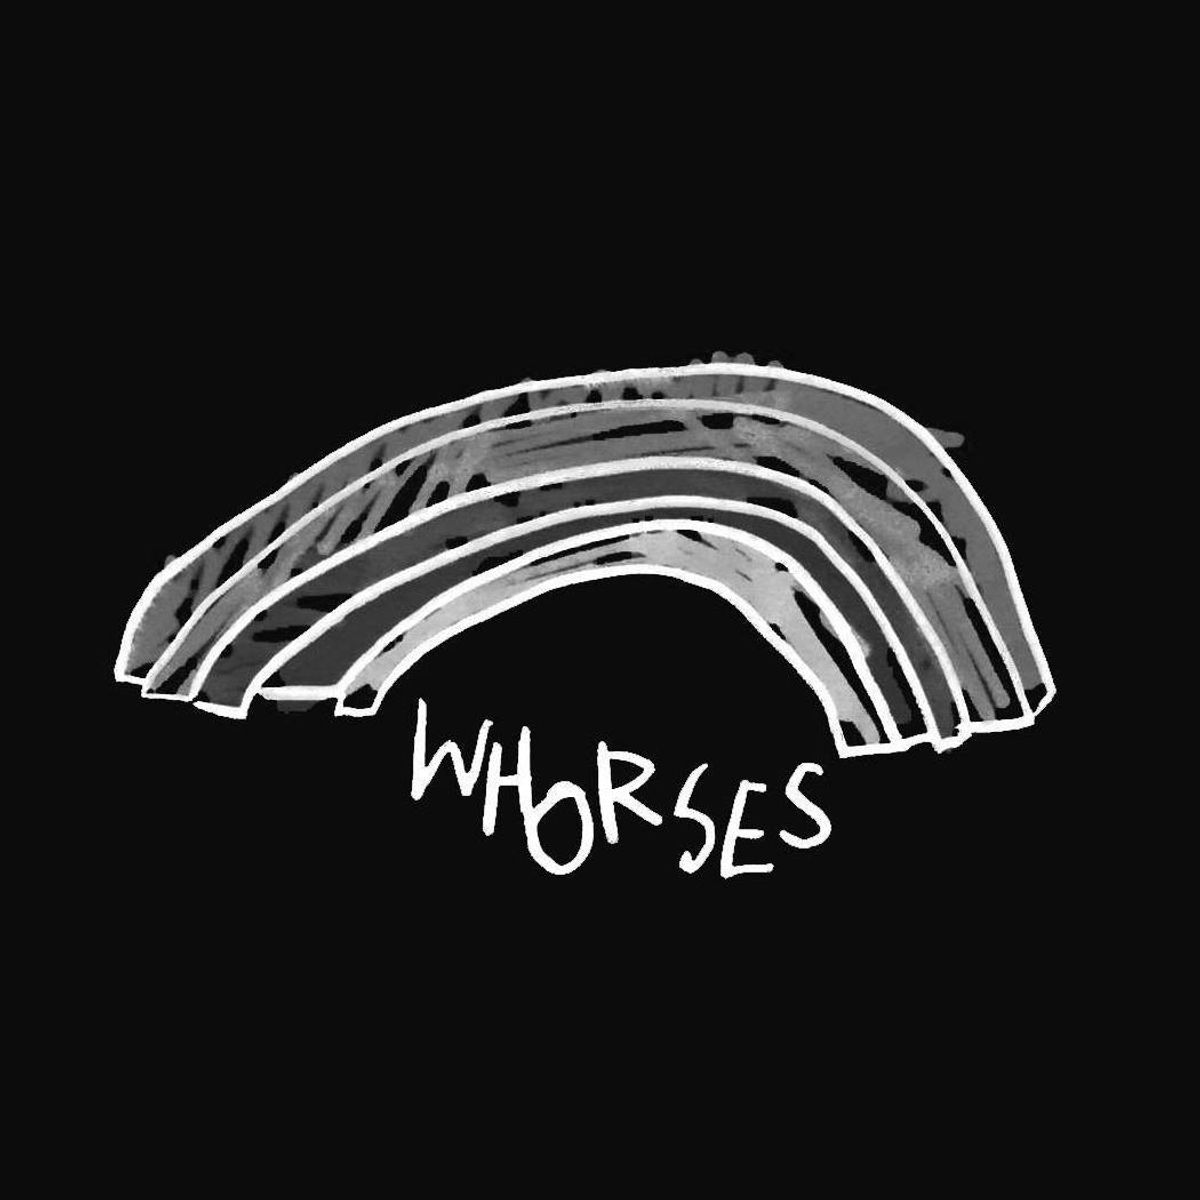 Whorses - Het leven gaat niet zonder fouten